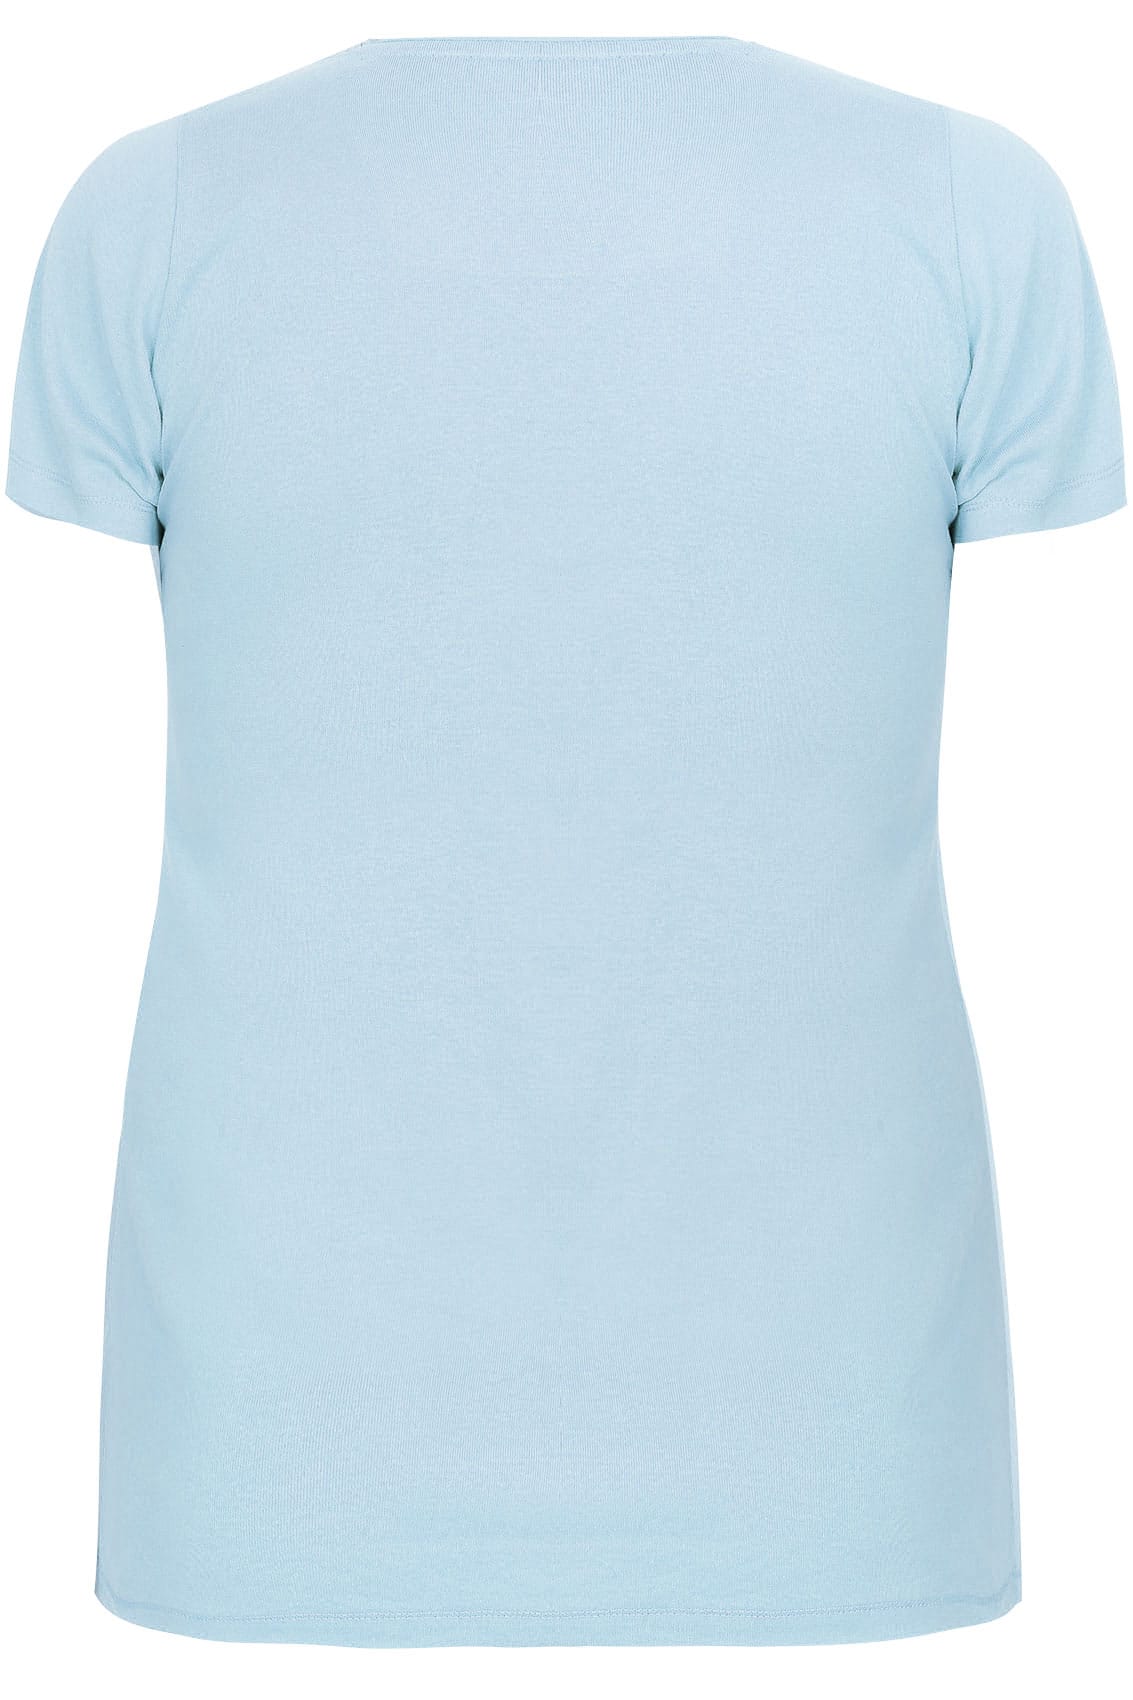 Powder Blue Short Sleeved V-Neck Basic T-Shirt plus size 16 to 36